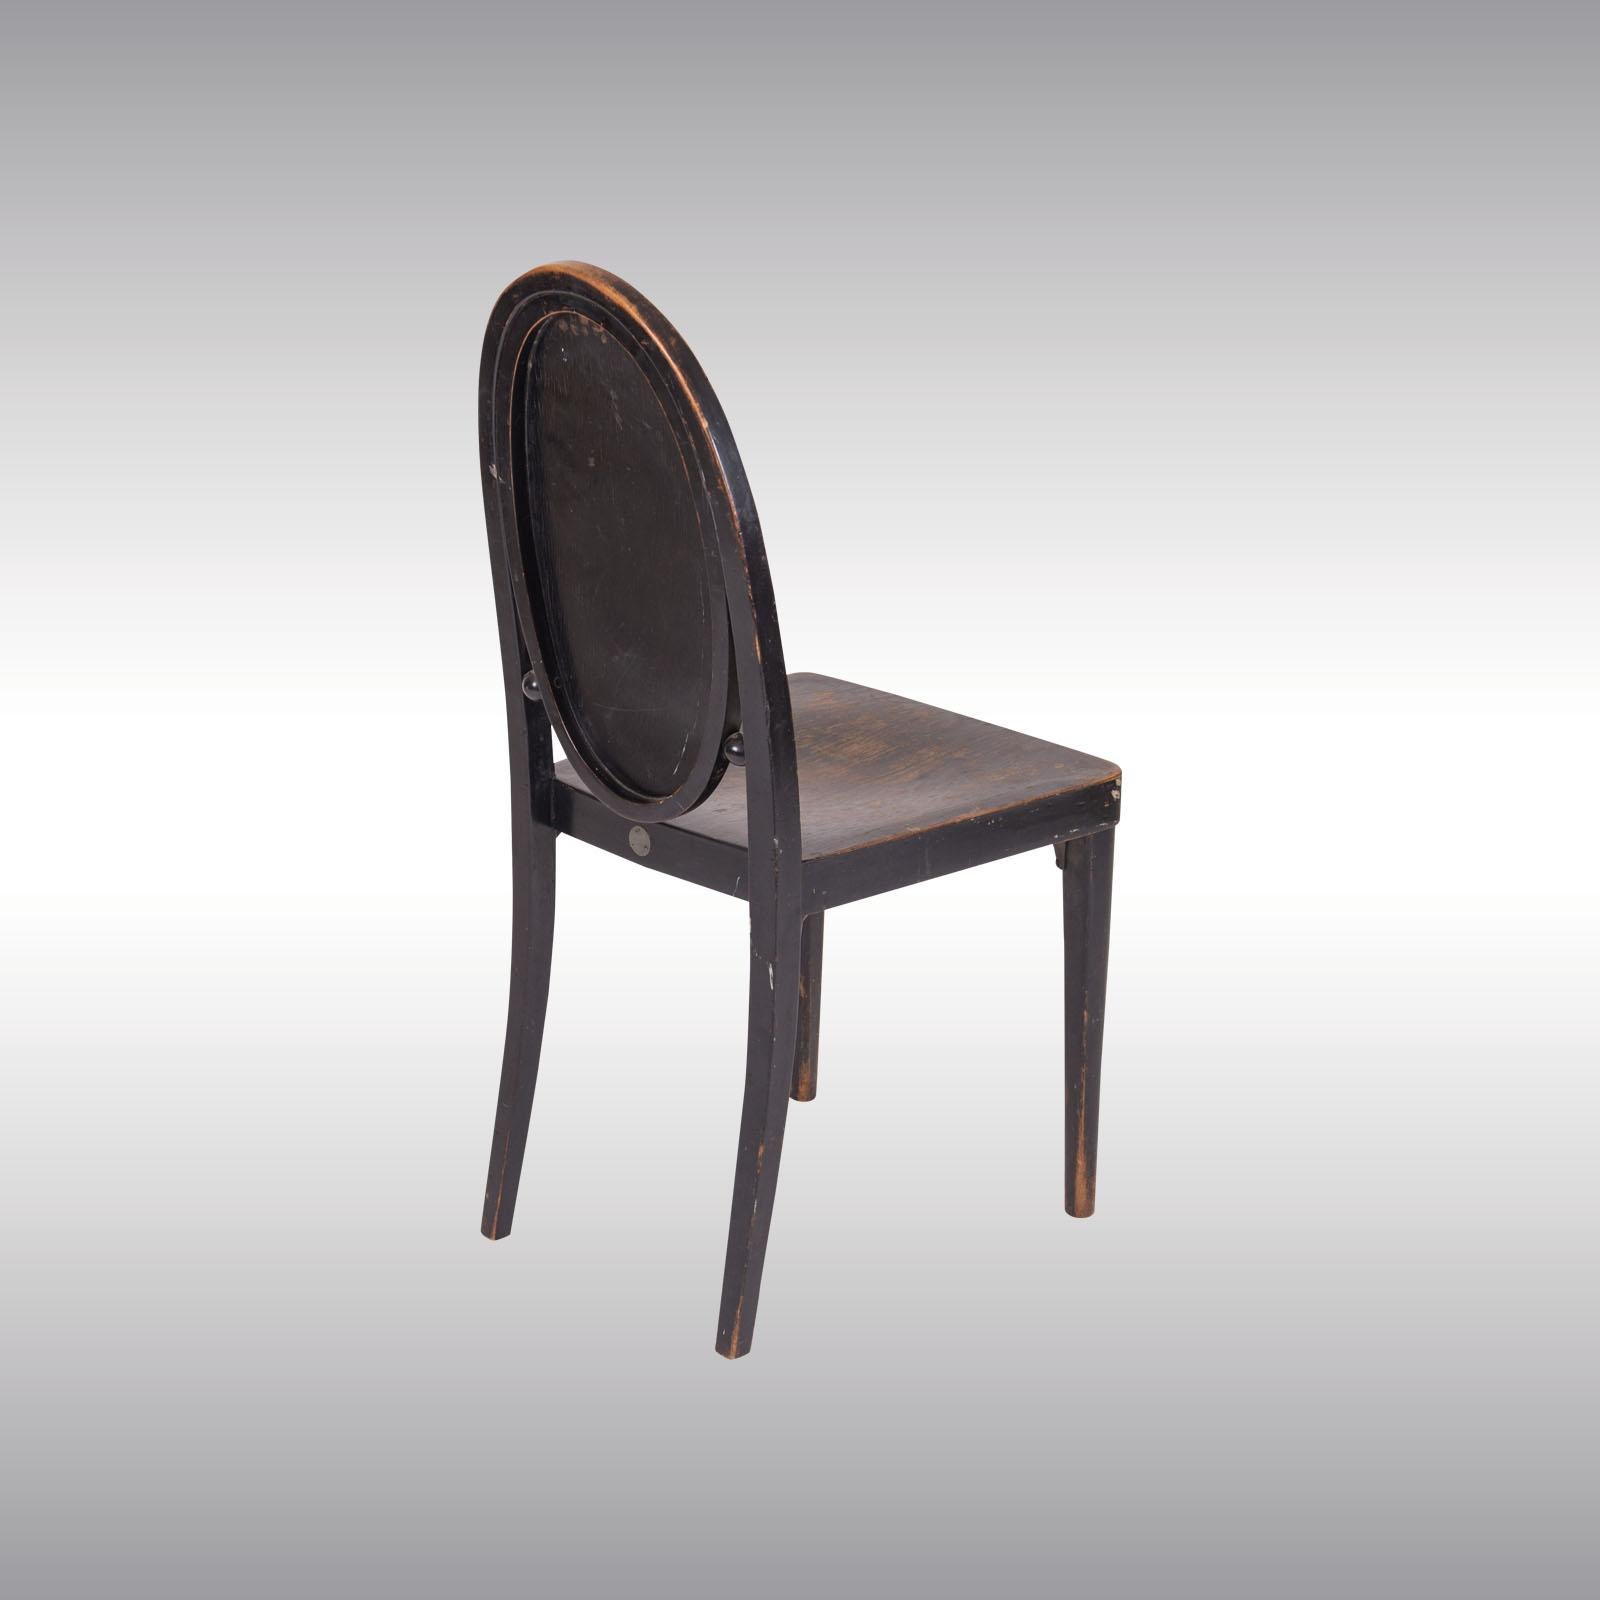 Hardwood Original Otto Prutscher & Gebrueder Thonet Vienna Jugendstil Chair, 20th Century For Sale